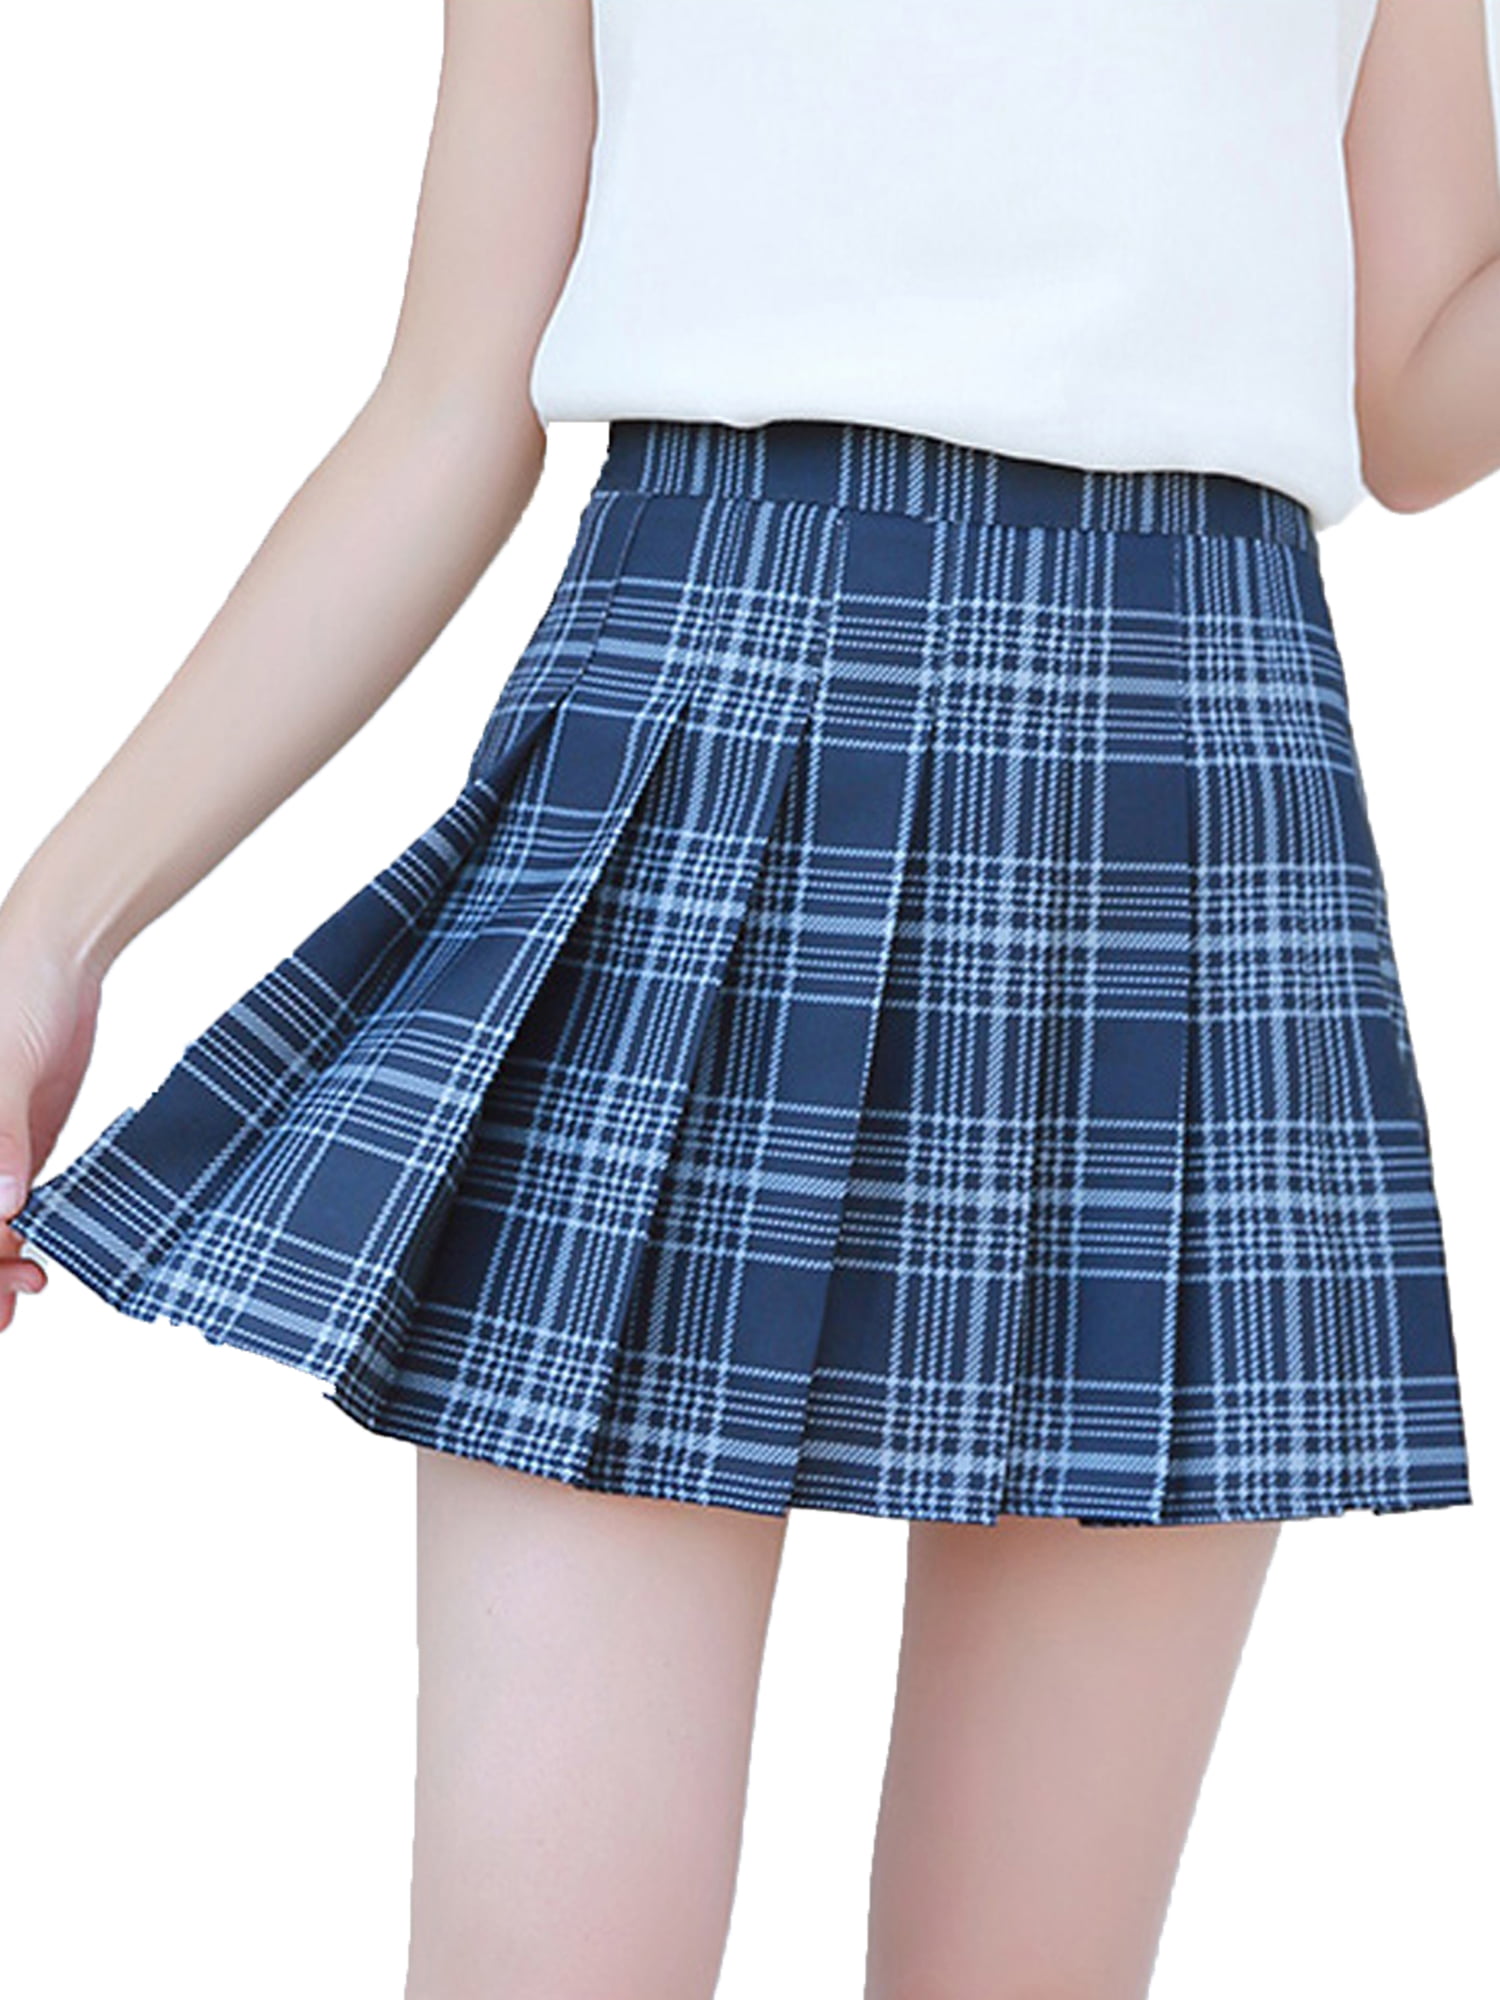 Kids Box Plated Tartan Check Skirt Girls Fancy Party Dress School Uniform Outfit 